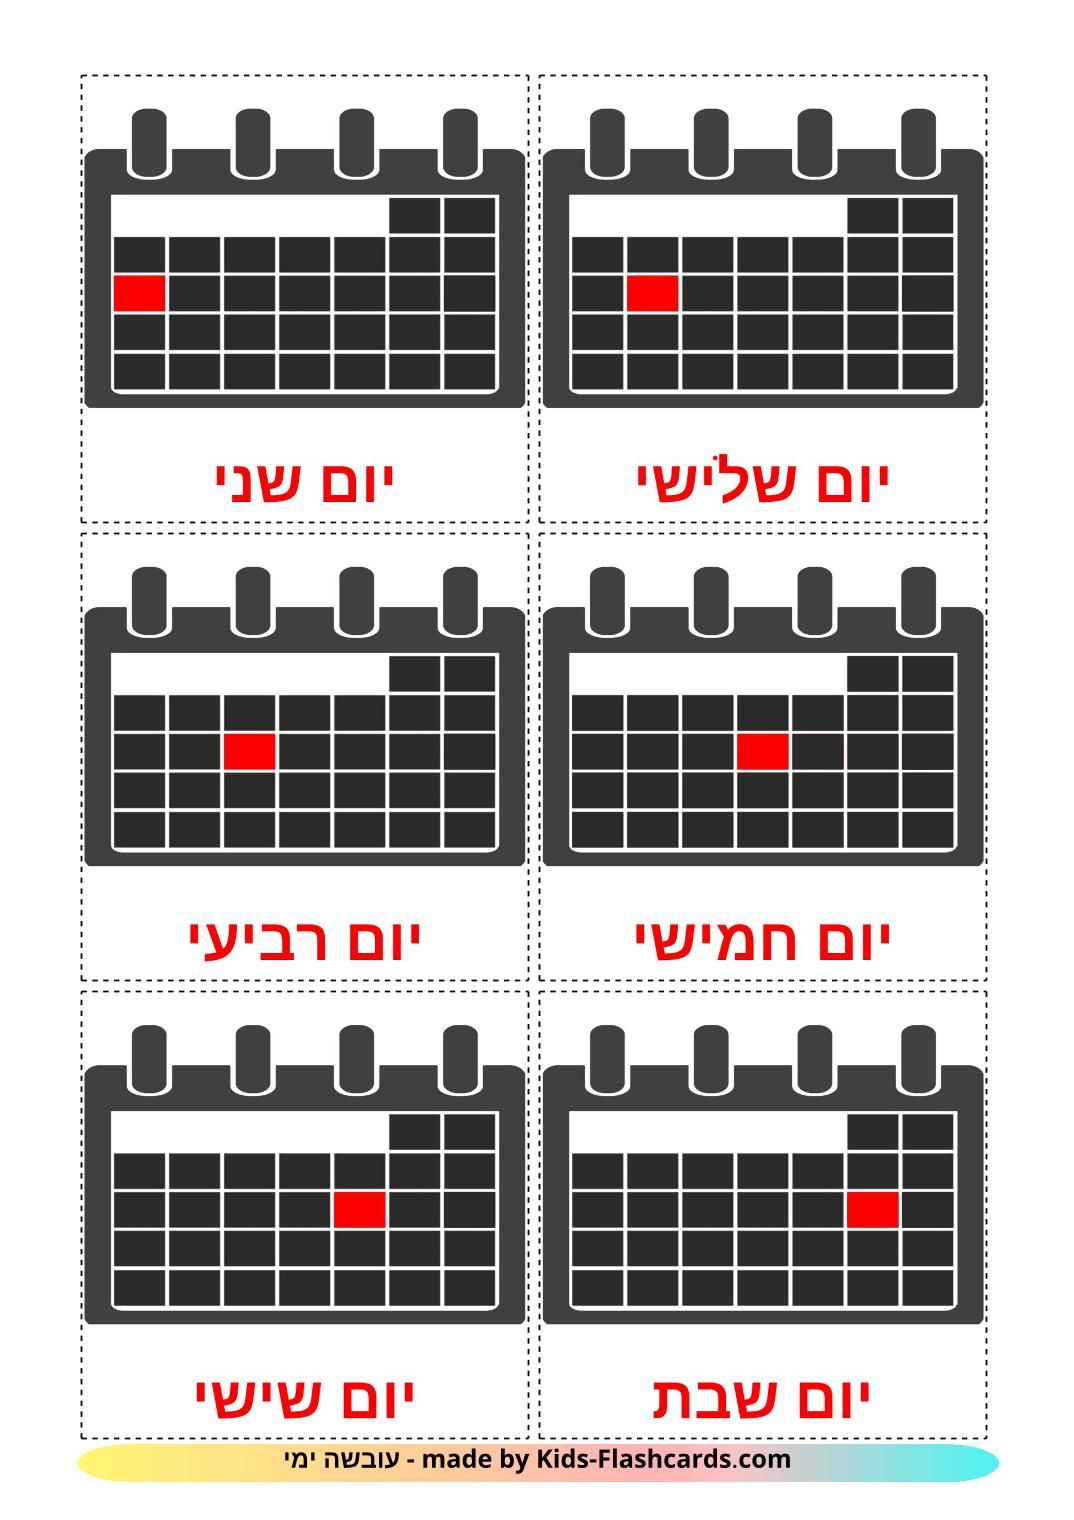 Days of Week - 12 Free Printable hebrew Flashcards 